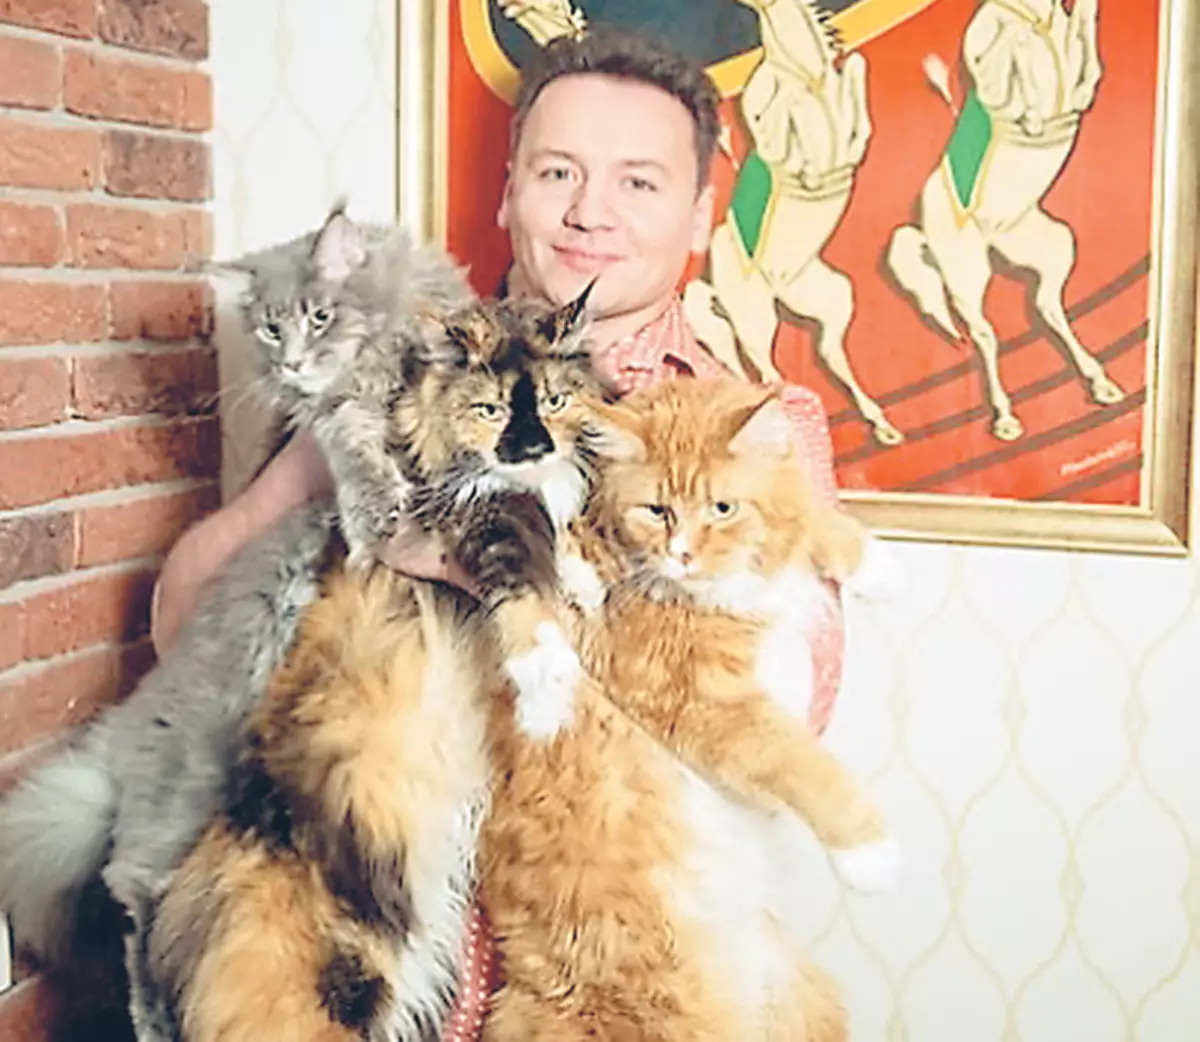 Alexander jednoducho miluje mačky a drží tri Maine Kunov ako domáce zvieratá: Elizeha, Walter a Alice